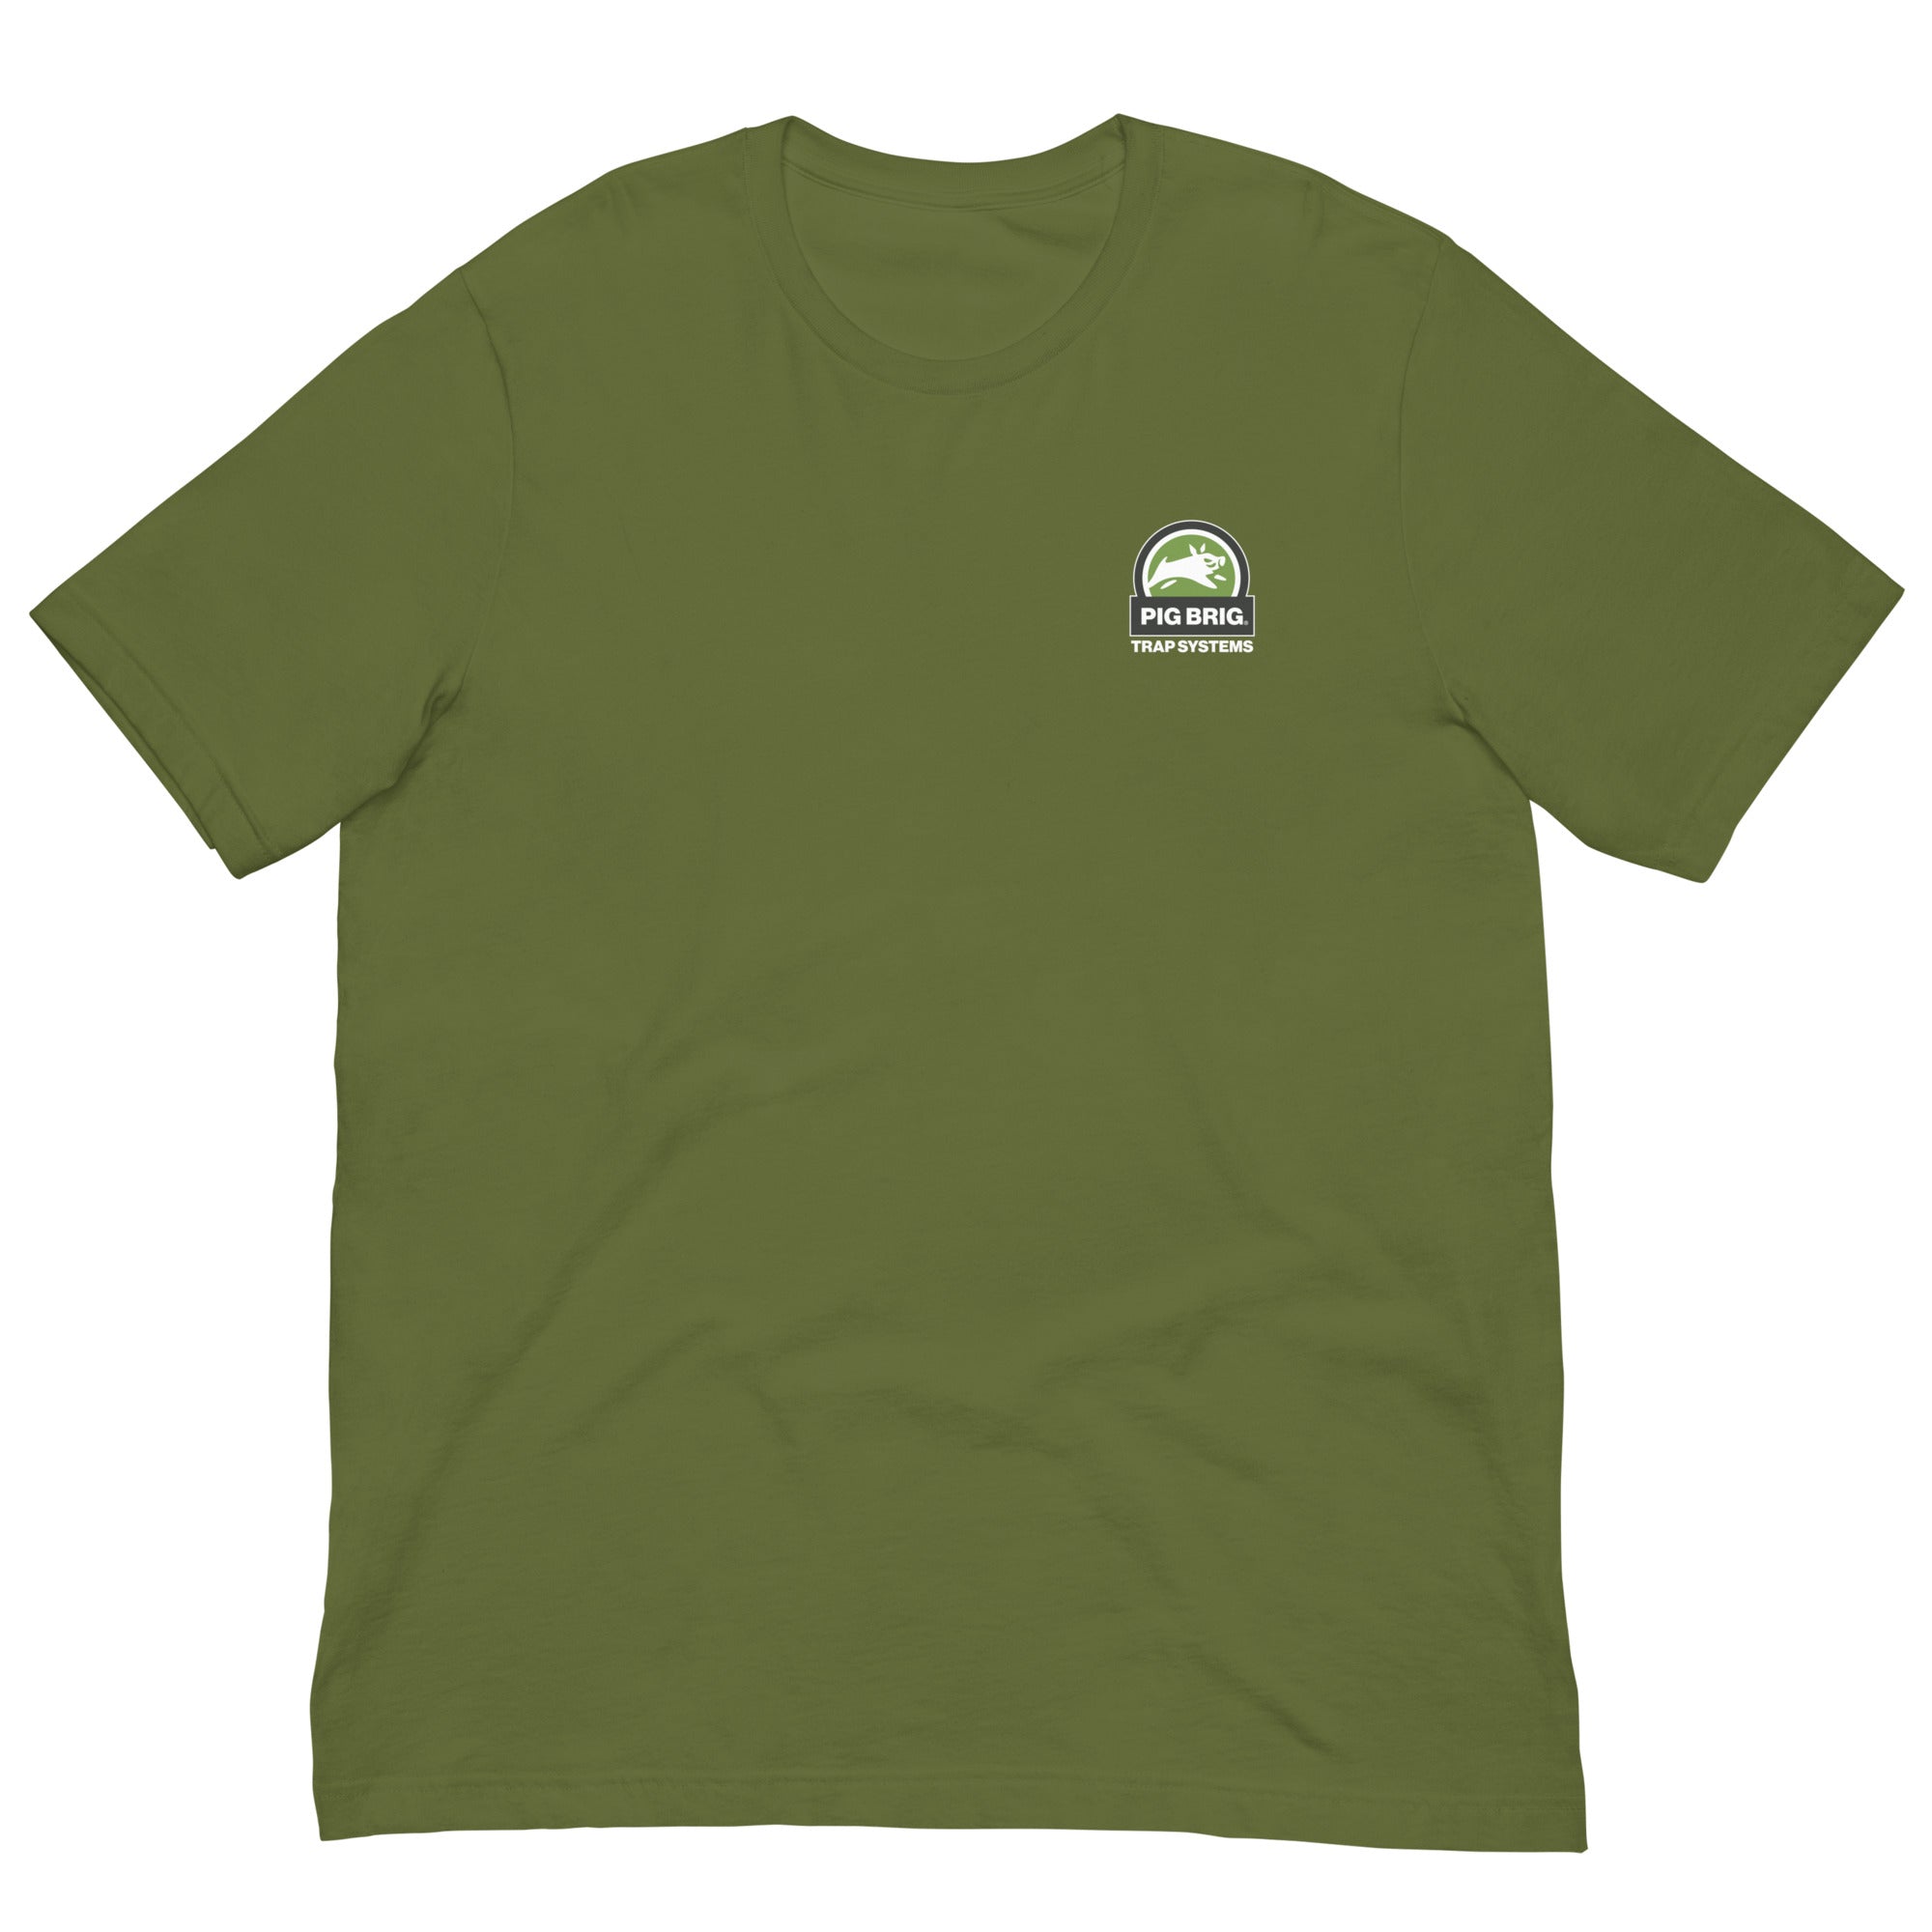 Got Pigs? Get a Brig. - Short-Sleeve Unisex T-Shirt